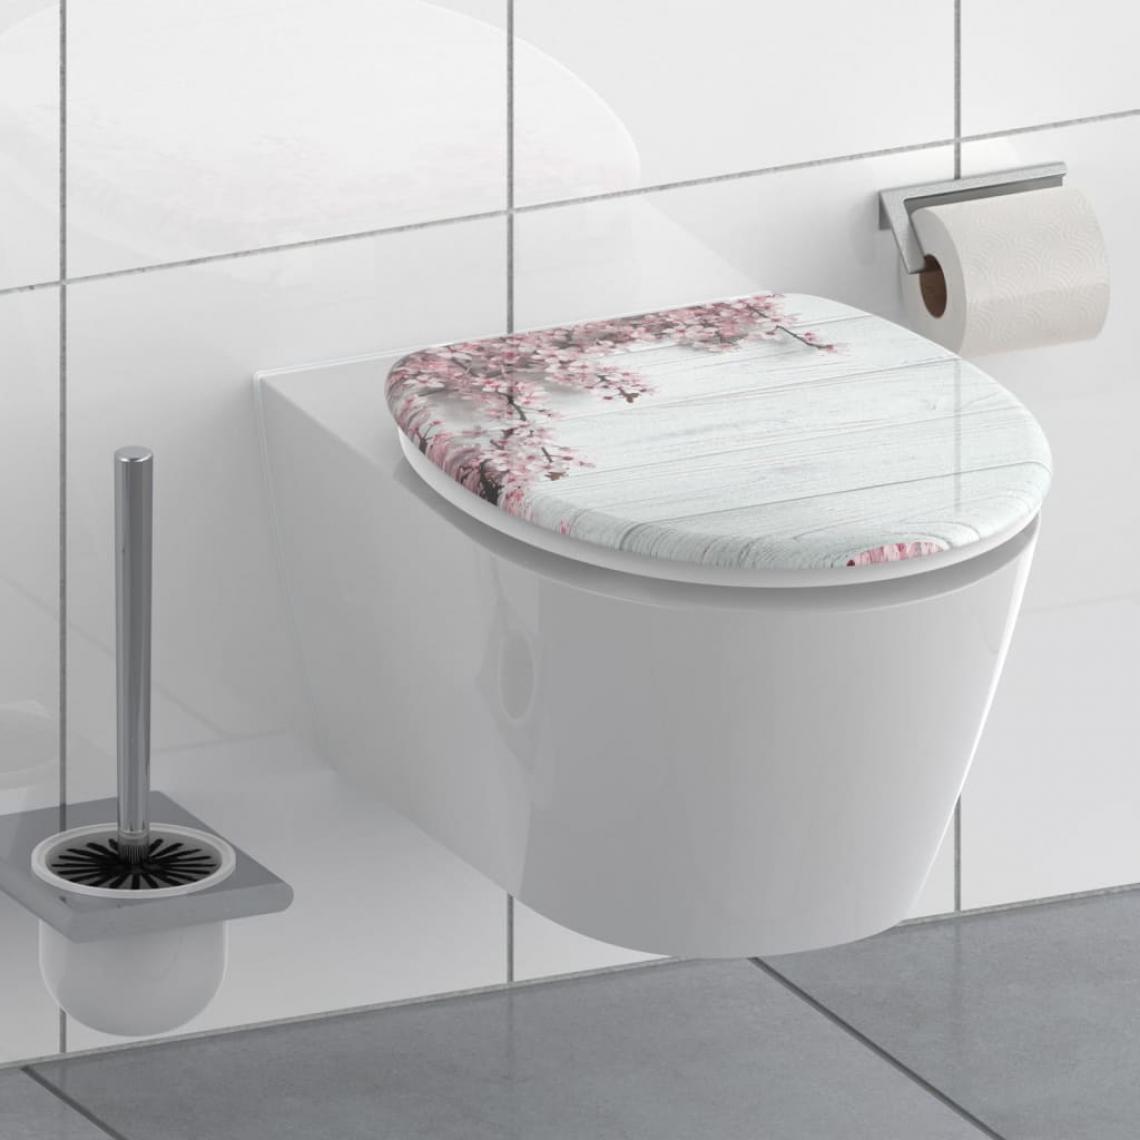 Schutte - SCHÜTTE Siège de toilette avec fermeture en douceur FLOWERS & WOOD - Abattant WC